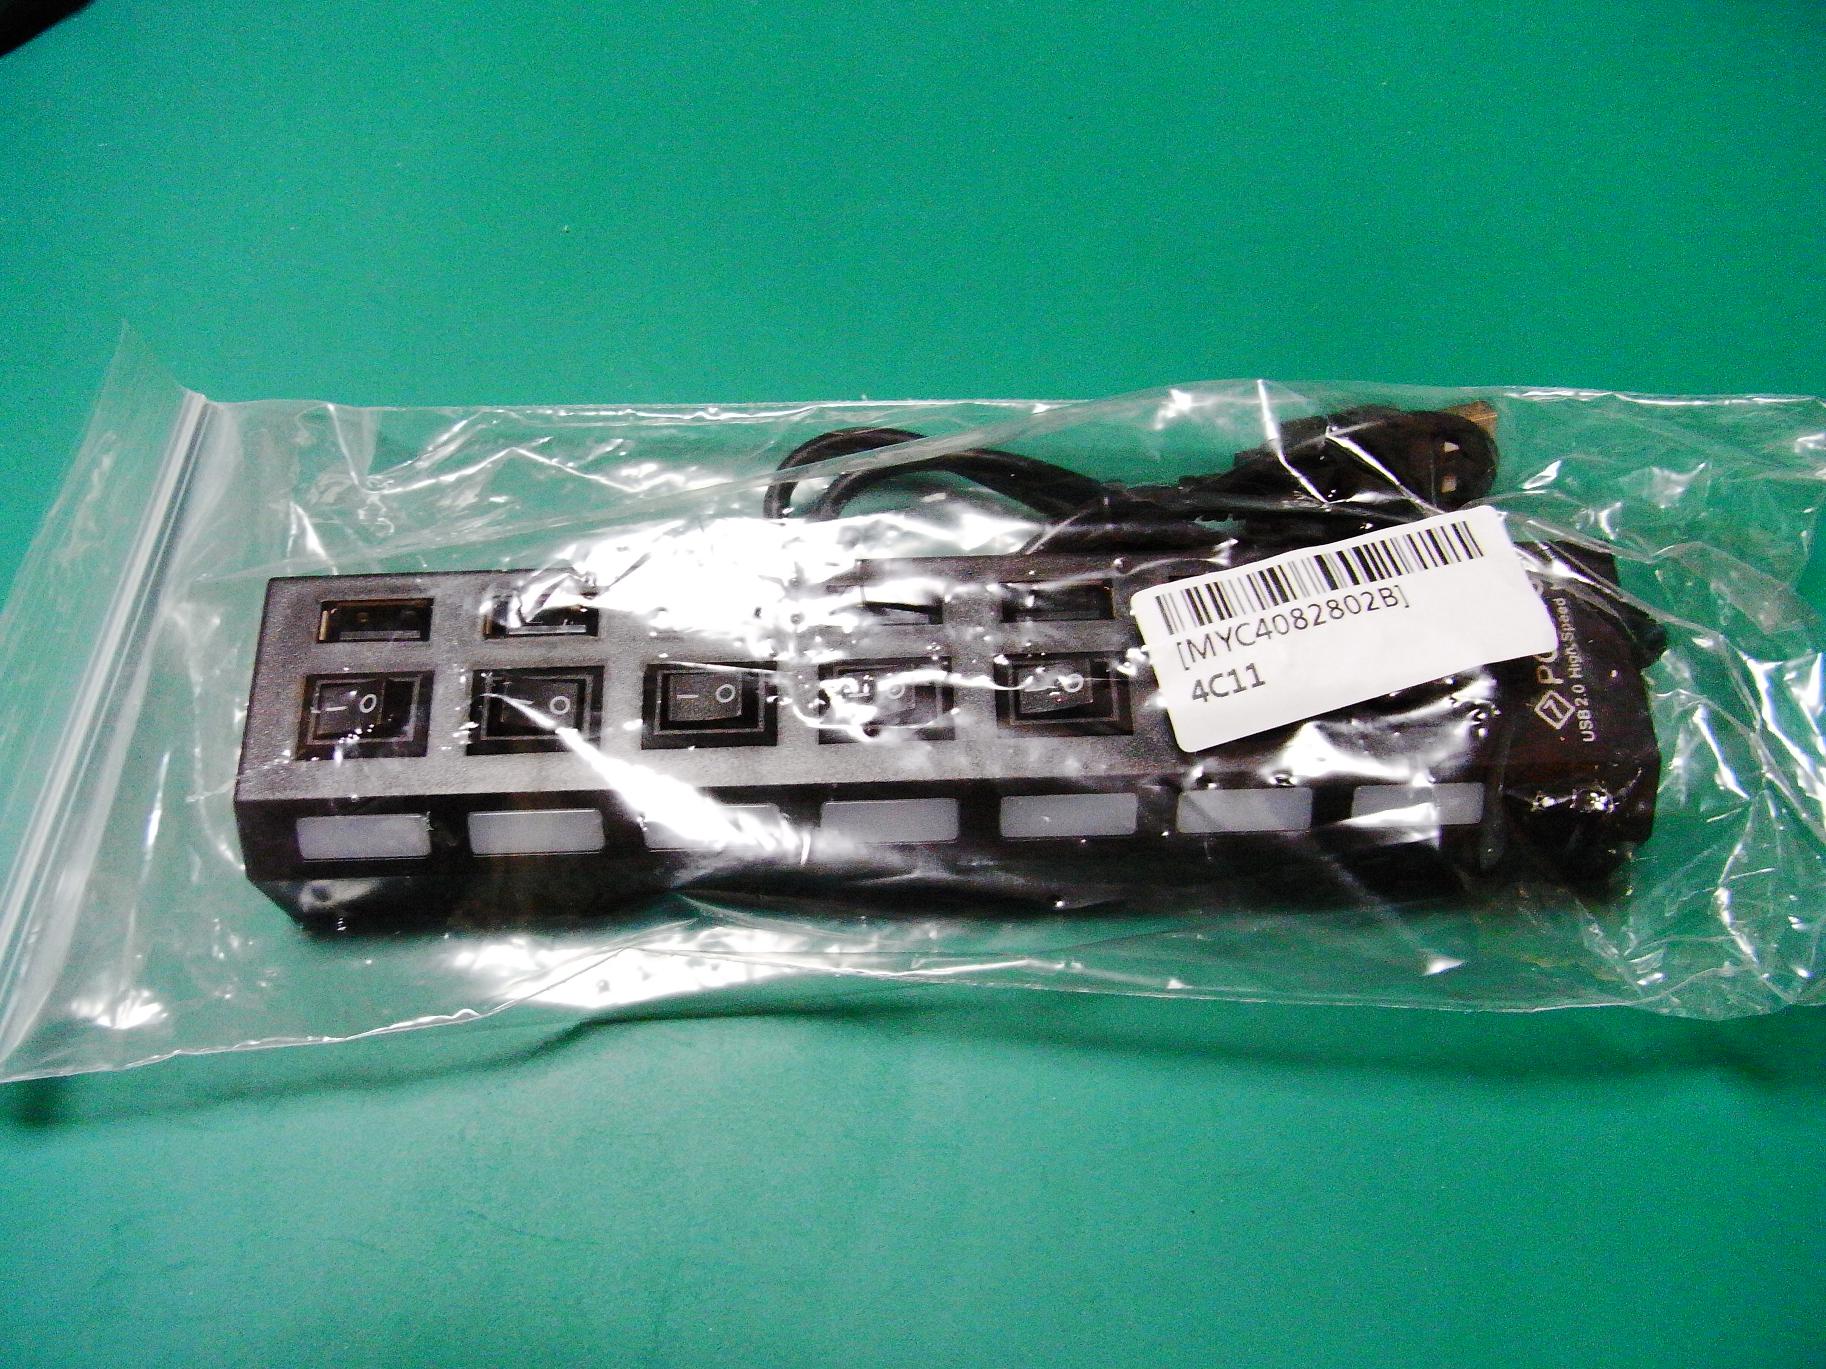 安価なスイッチ付USBハブのレビュー(7 Ports LED USB High Speed 480 Mbps Adapter USB Hub With Power on/off Switch For PC Laptop Computer)